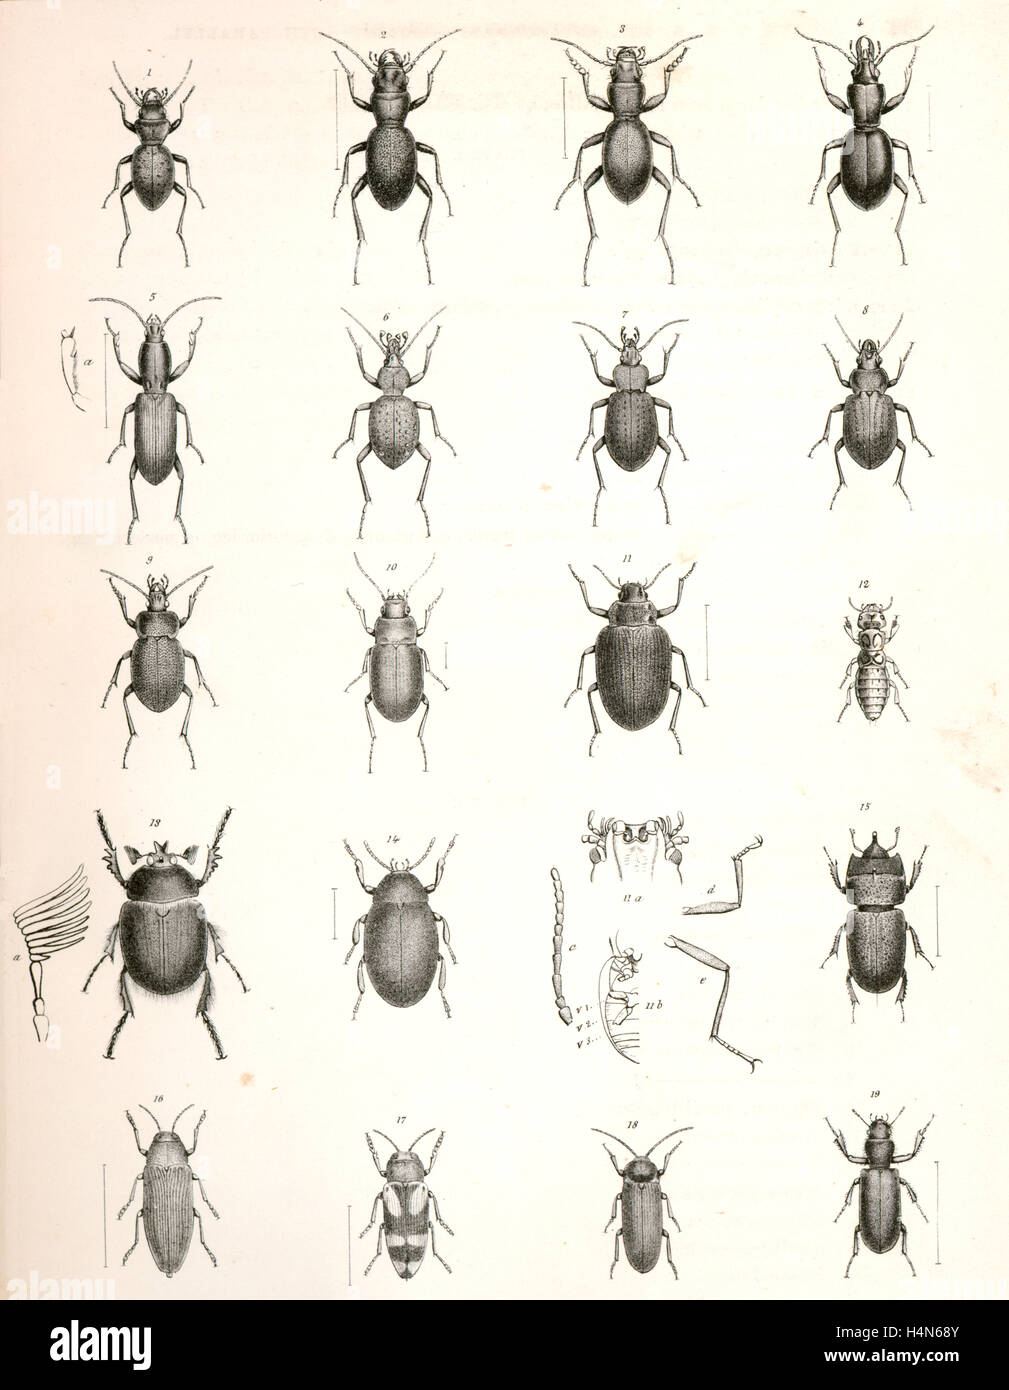 1. Domus Dejeanii; 2. Domus Audouinii; 3. Domus californicus; 4. Promecognathus laevissimus; 5. Californicum Agaosoma Foto Stock